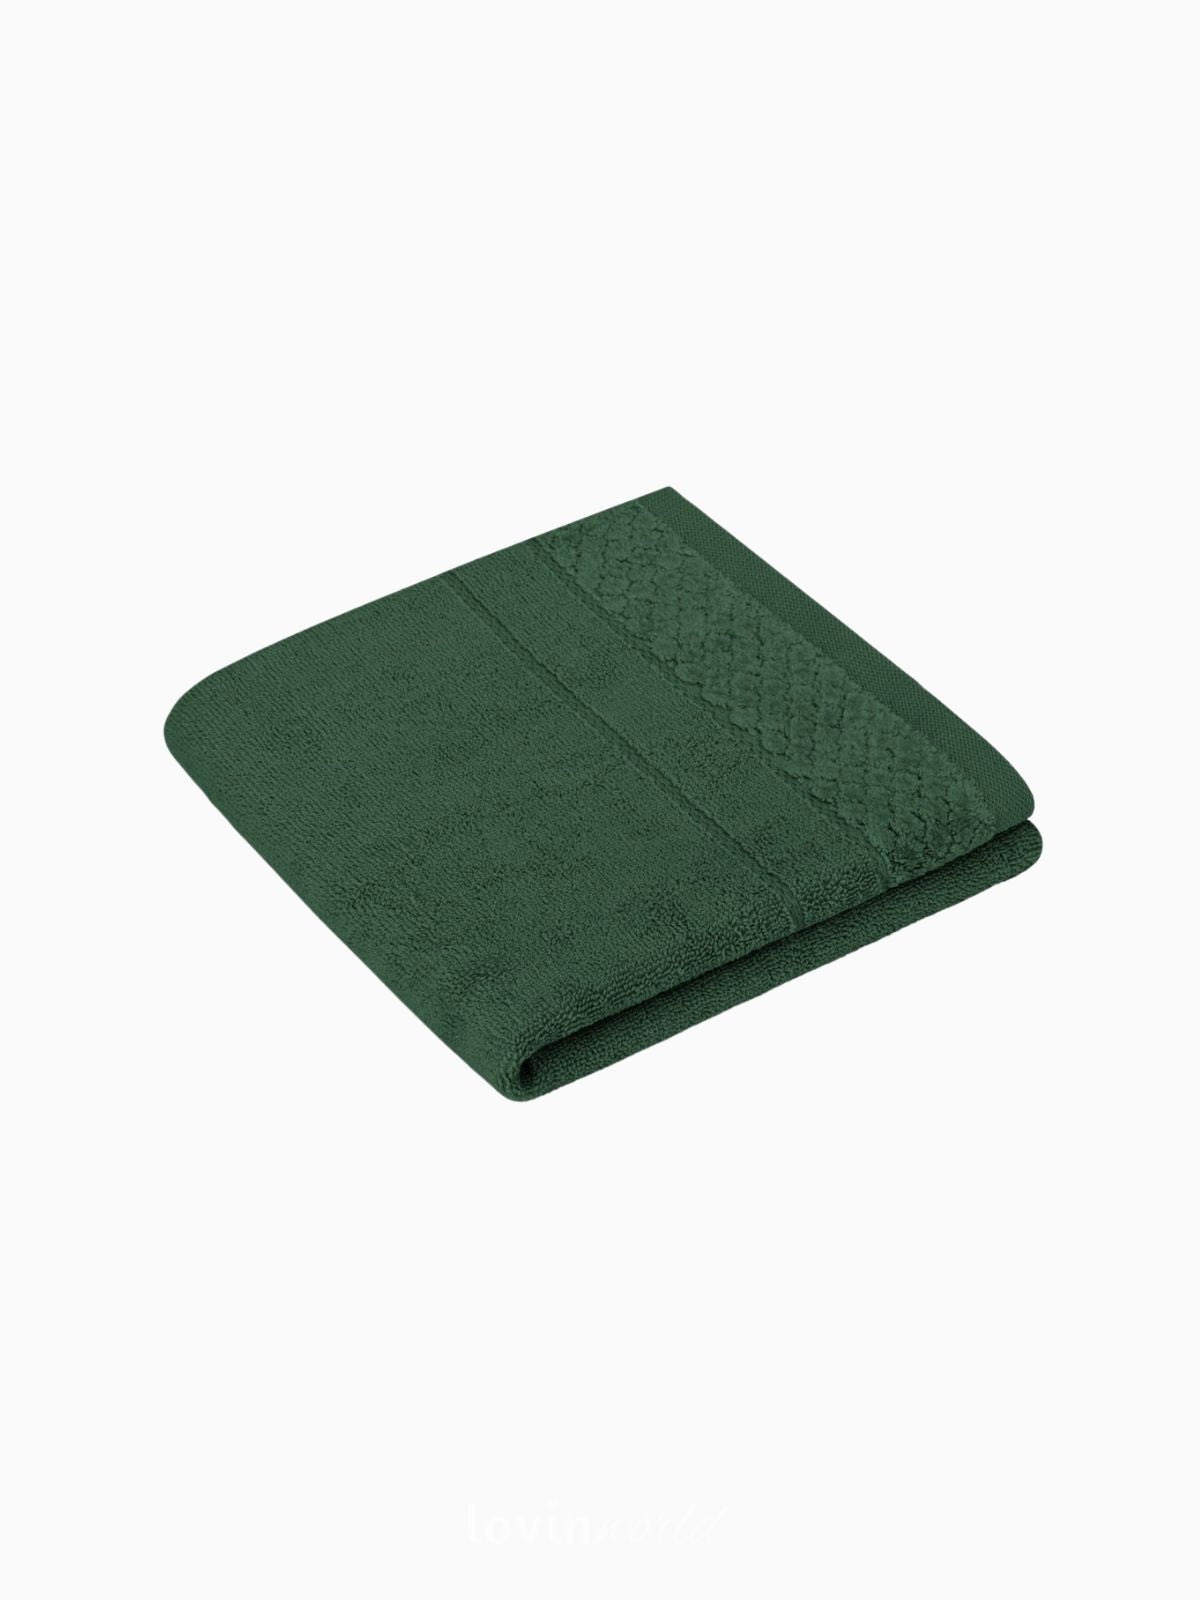 Set 6 Asciugamani da bagno Rubrum in 100% cotone, colore verde chiaro e scuro-3